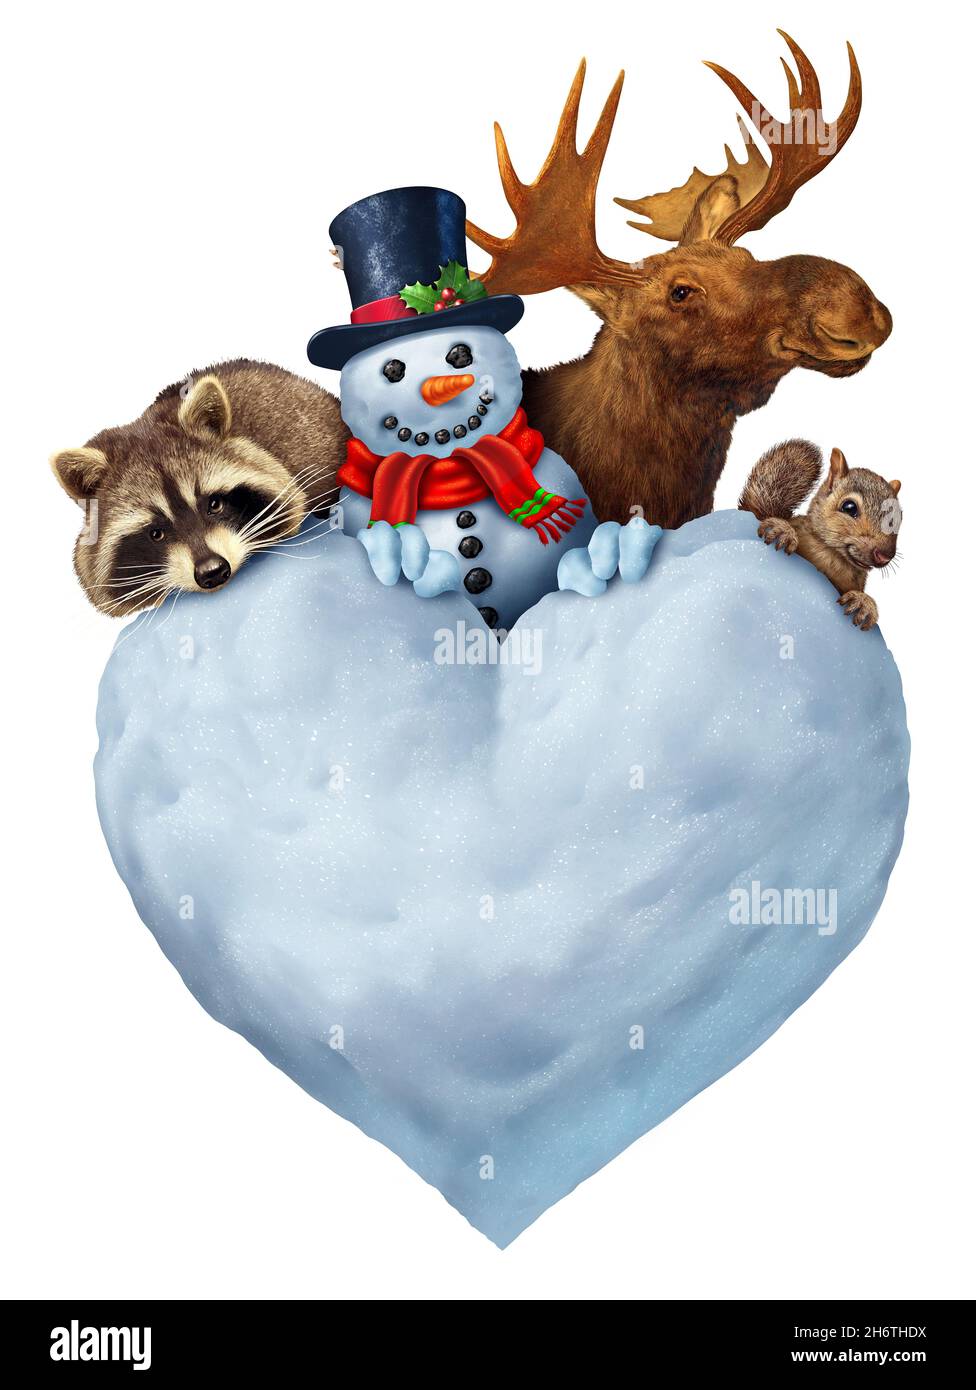 Lustige Winterwildtiere als Schneemann ein Elch mit Waschbär und Eichhörnchen hinter einer herzförmigen Schneeskulptur als lustiges Tier Weihnachtsurlaub. Stockfoto